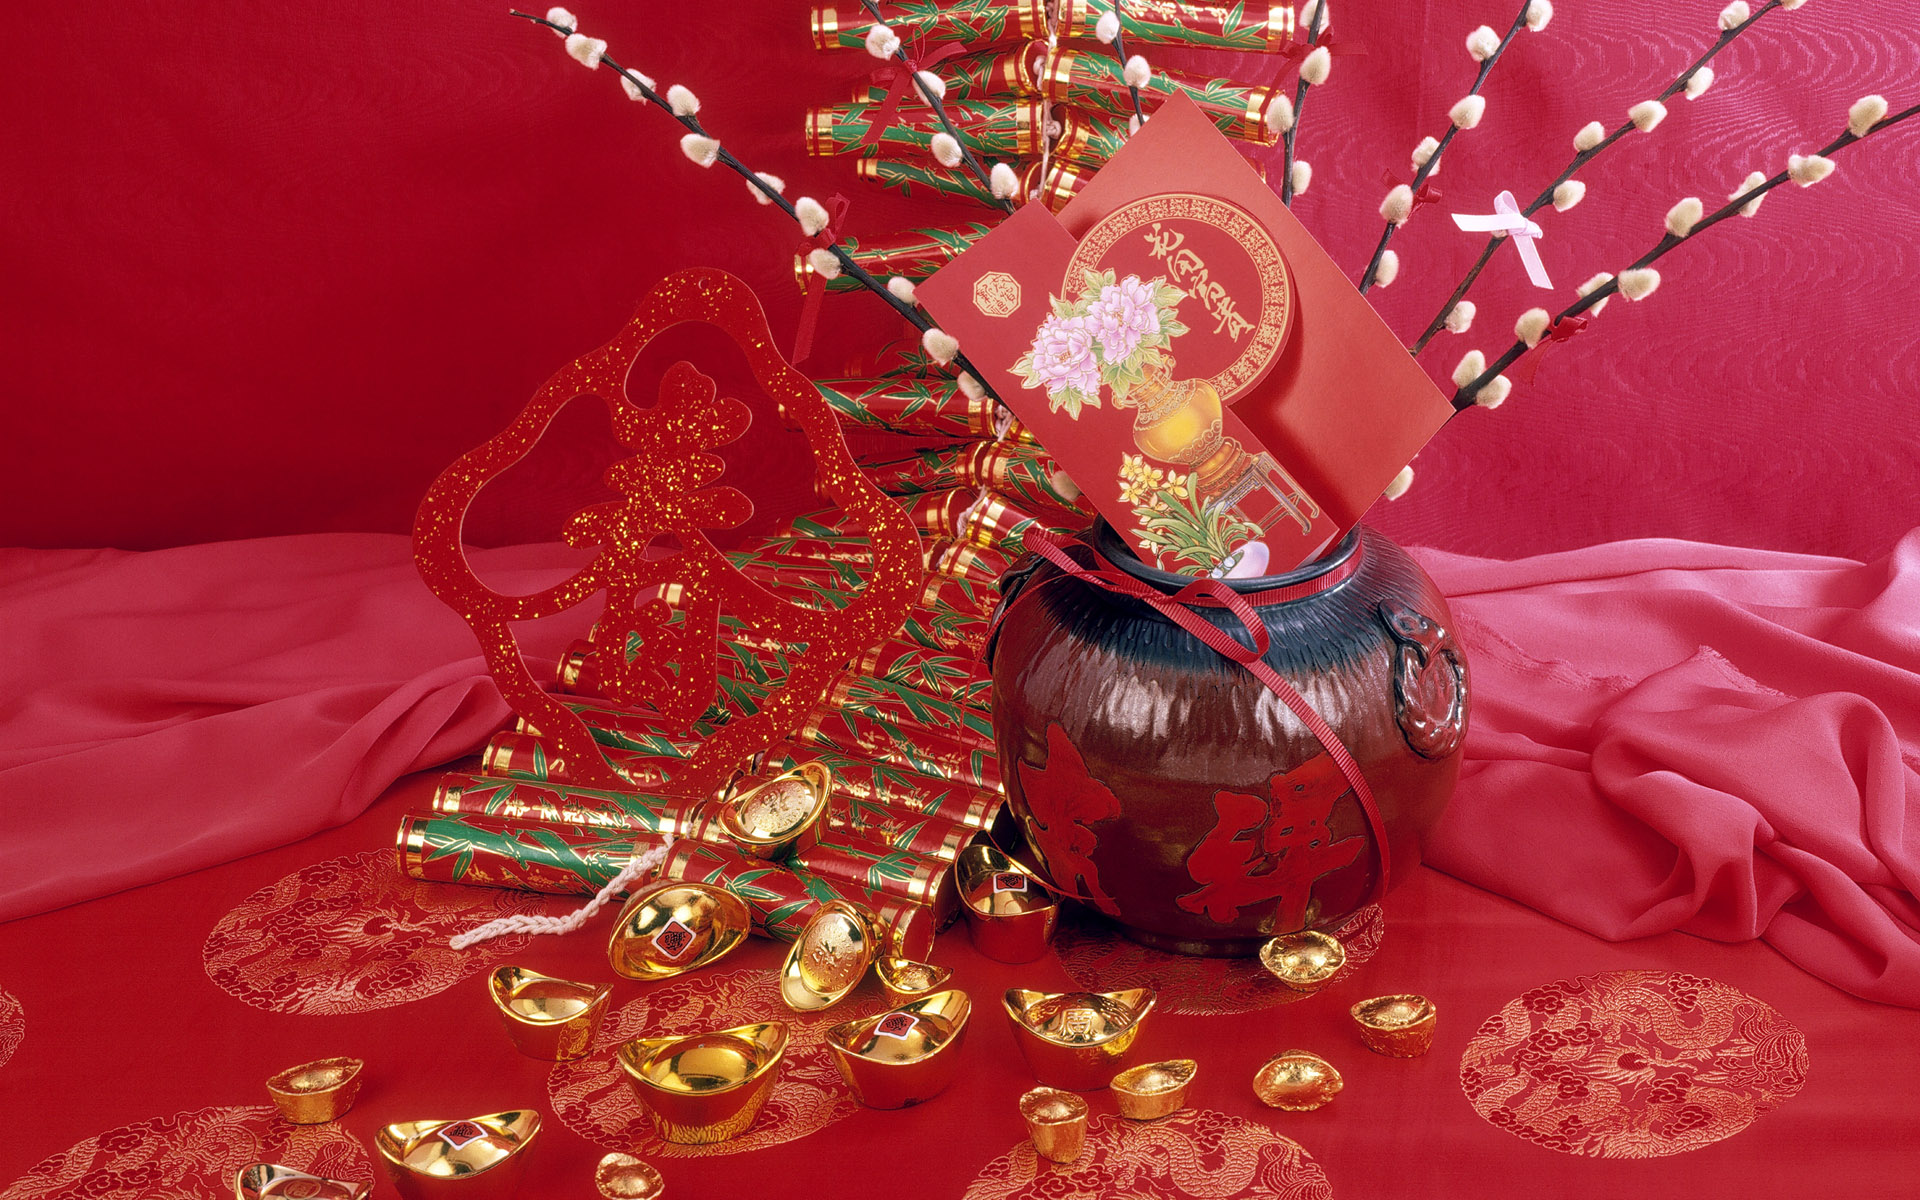 chinesische neujahrstapete,rot,stillleben,kernstück,stillleben fotografie,kristall